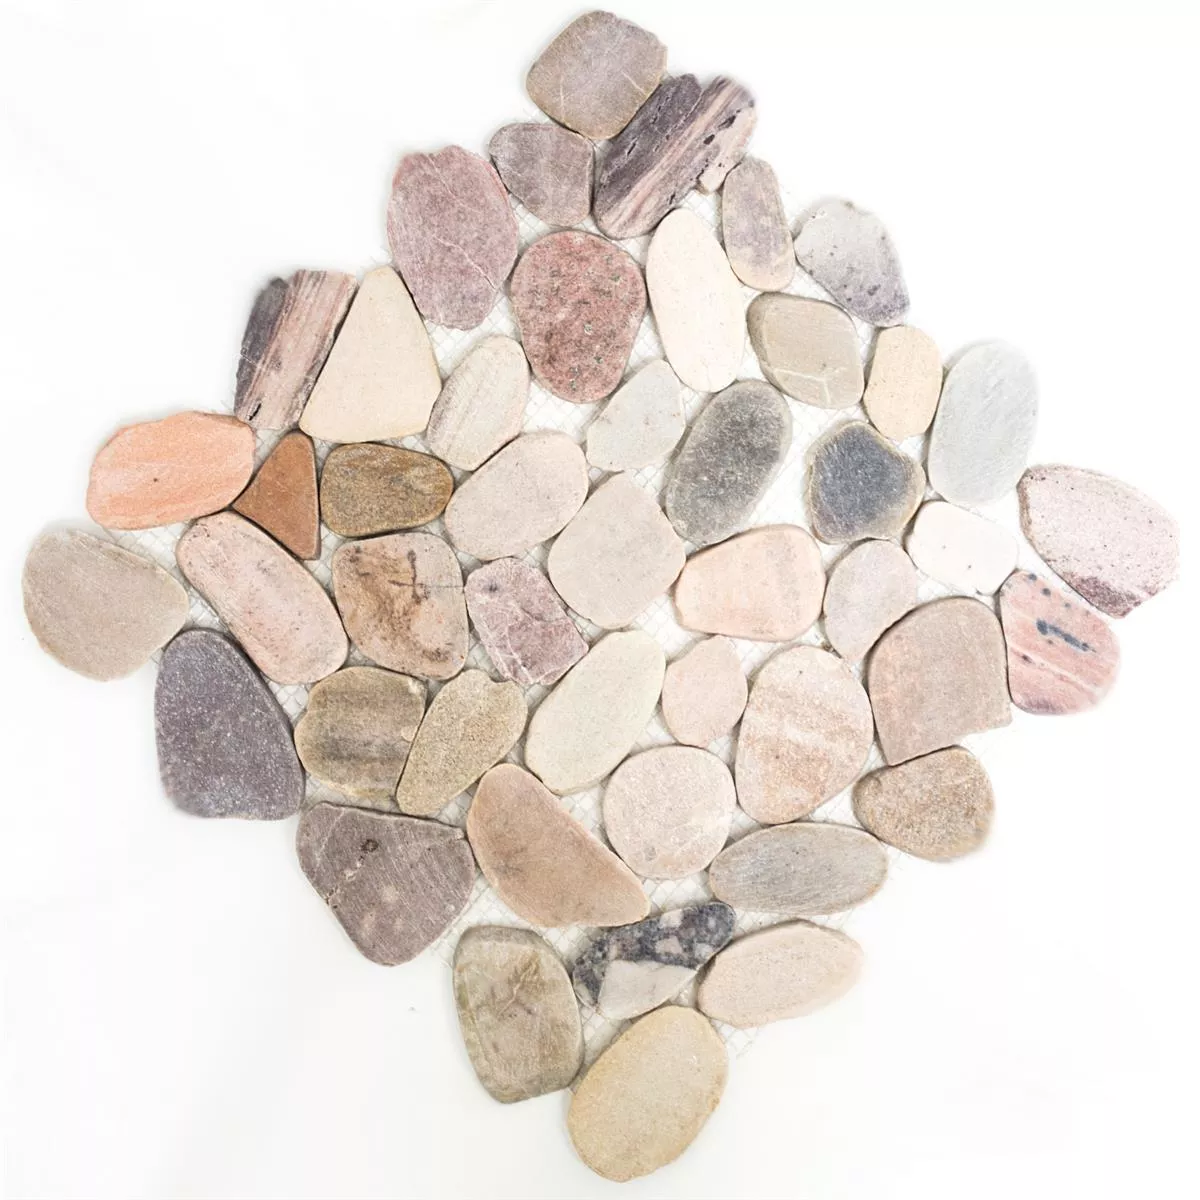 Sample River Pebbles Mosaic Natural Stone Cut Kos